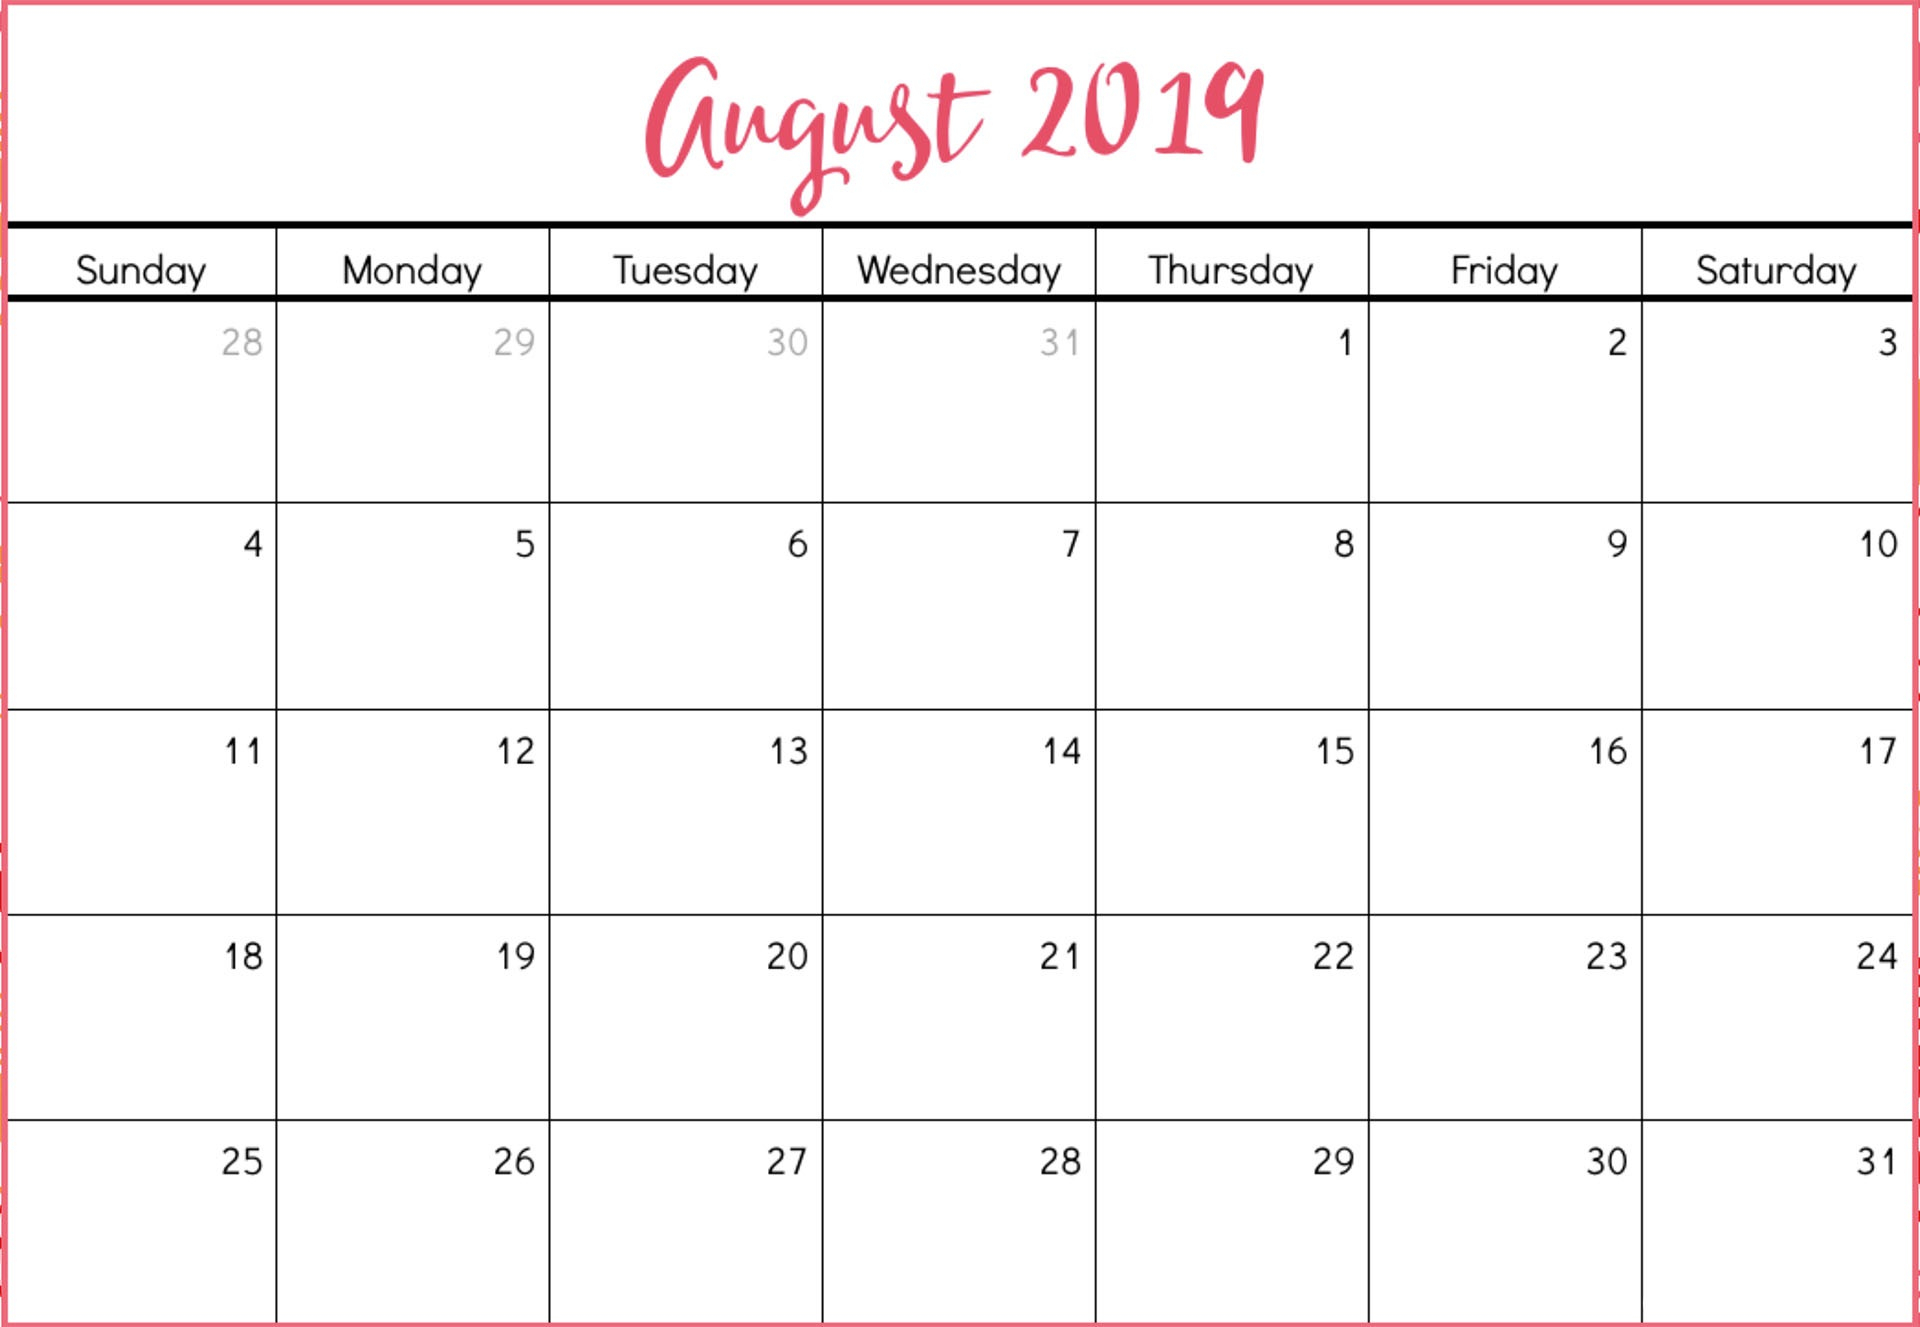 August 2019 Calendar Template Time Scheduler - Free